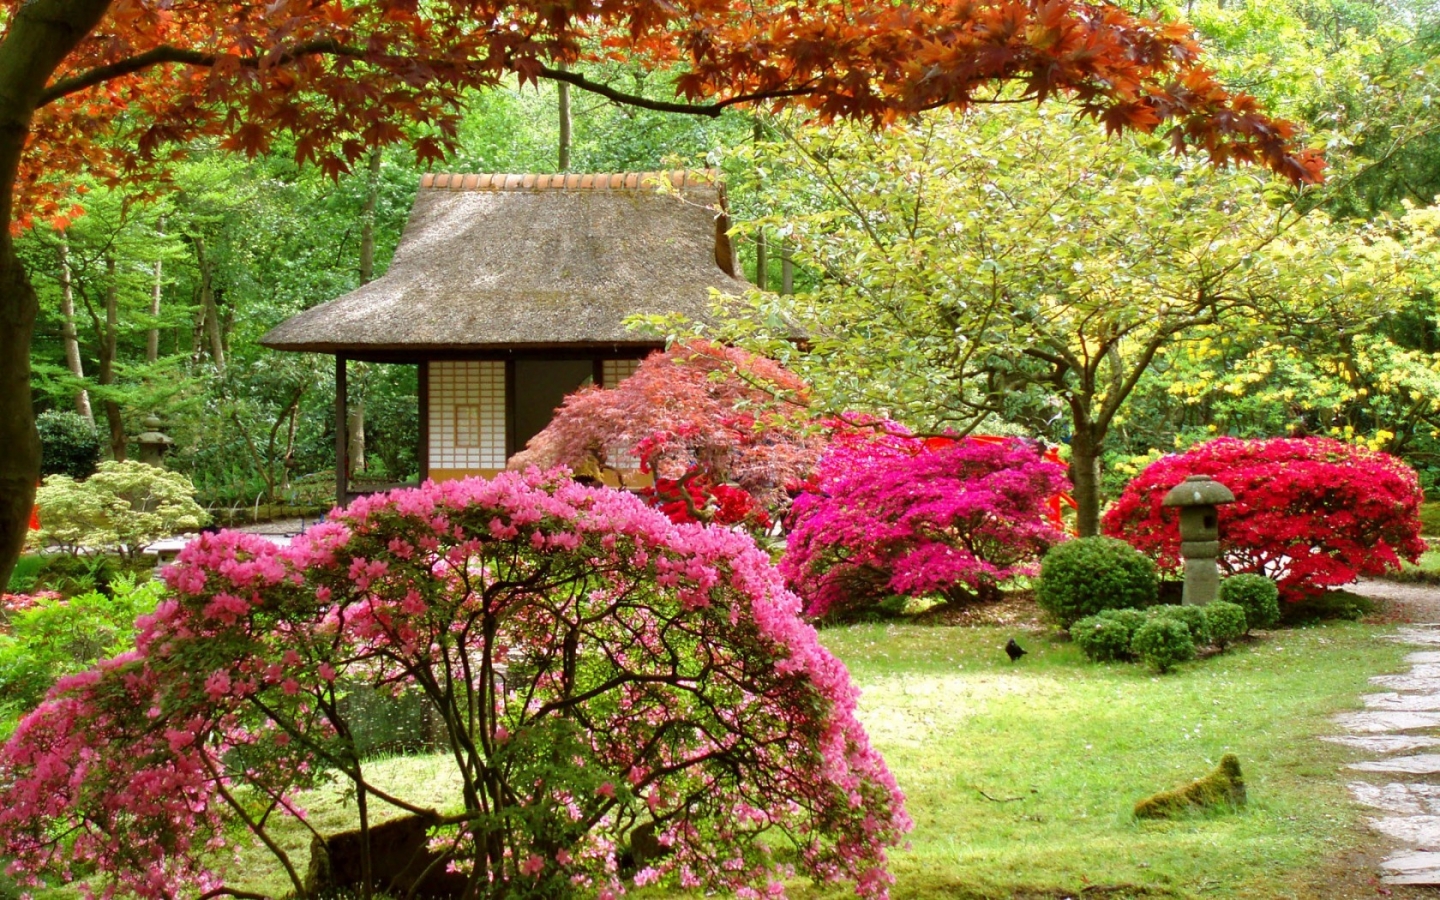 Spring Japanese Garden for 1440 x 900 widescreen resolution